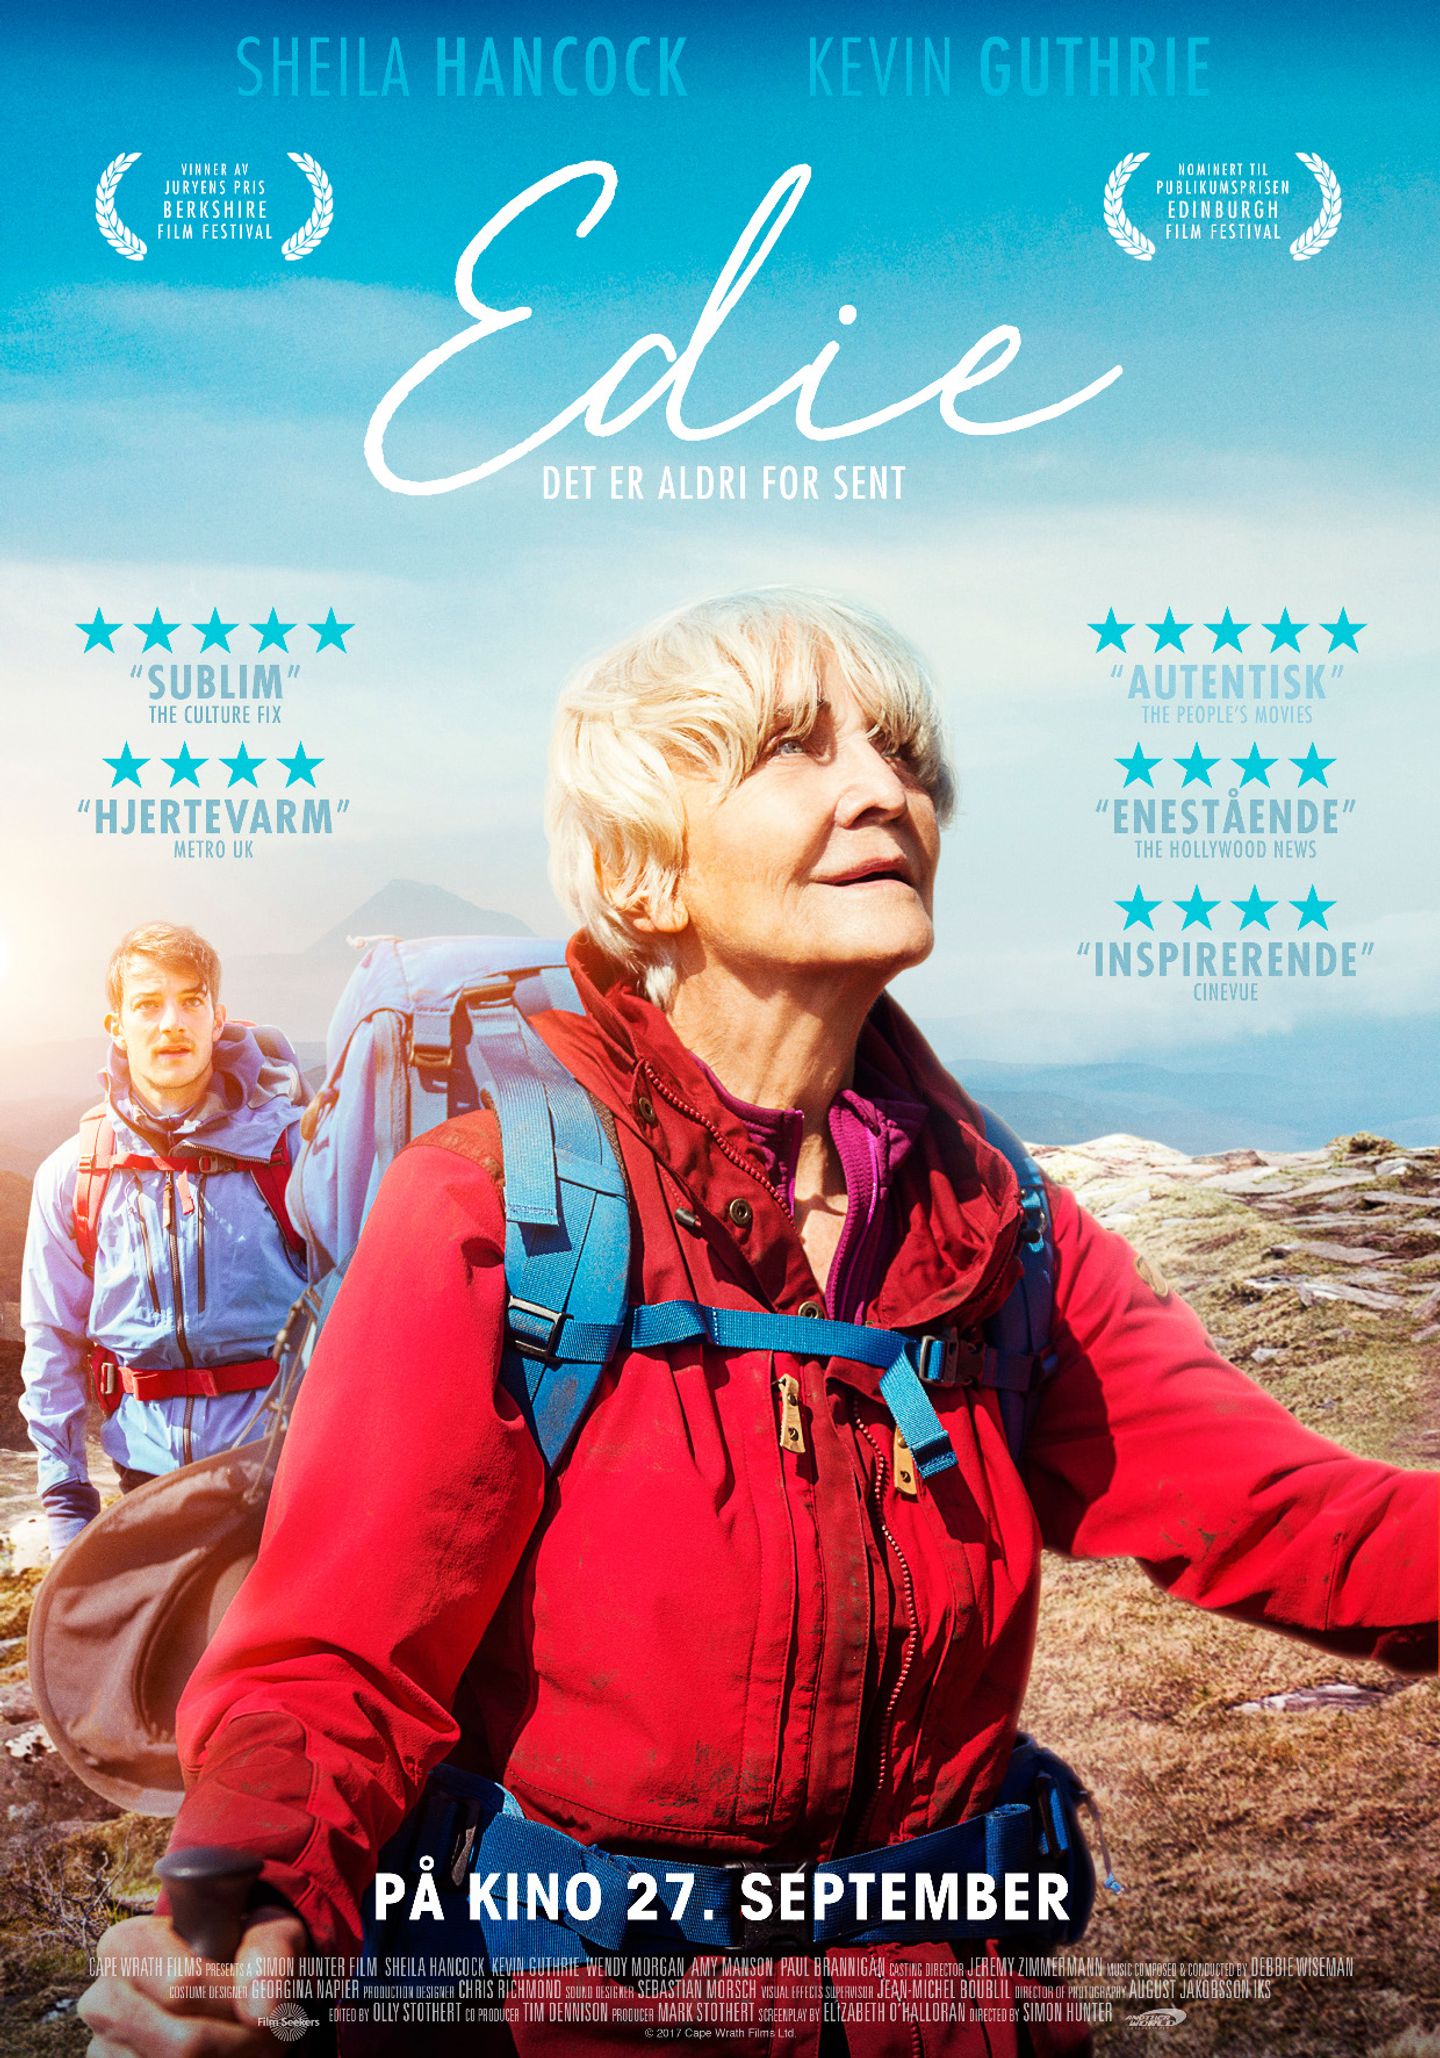 Plakat for 'Edie'